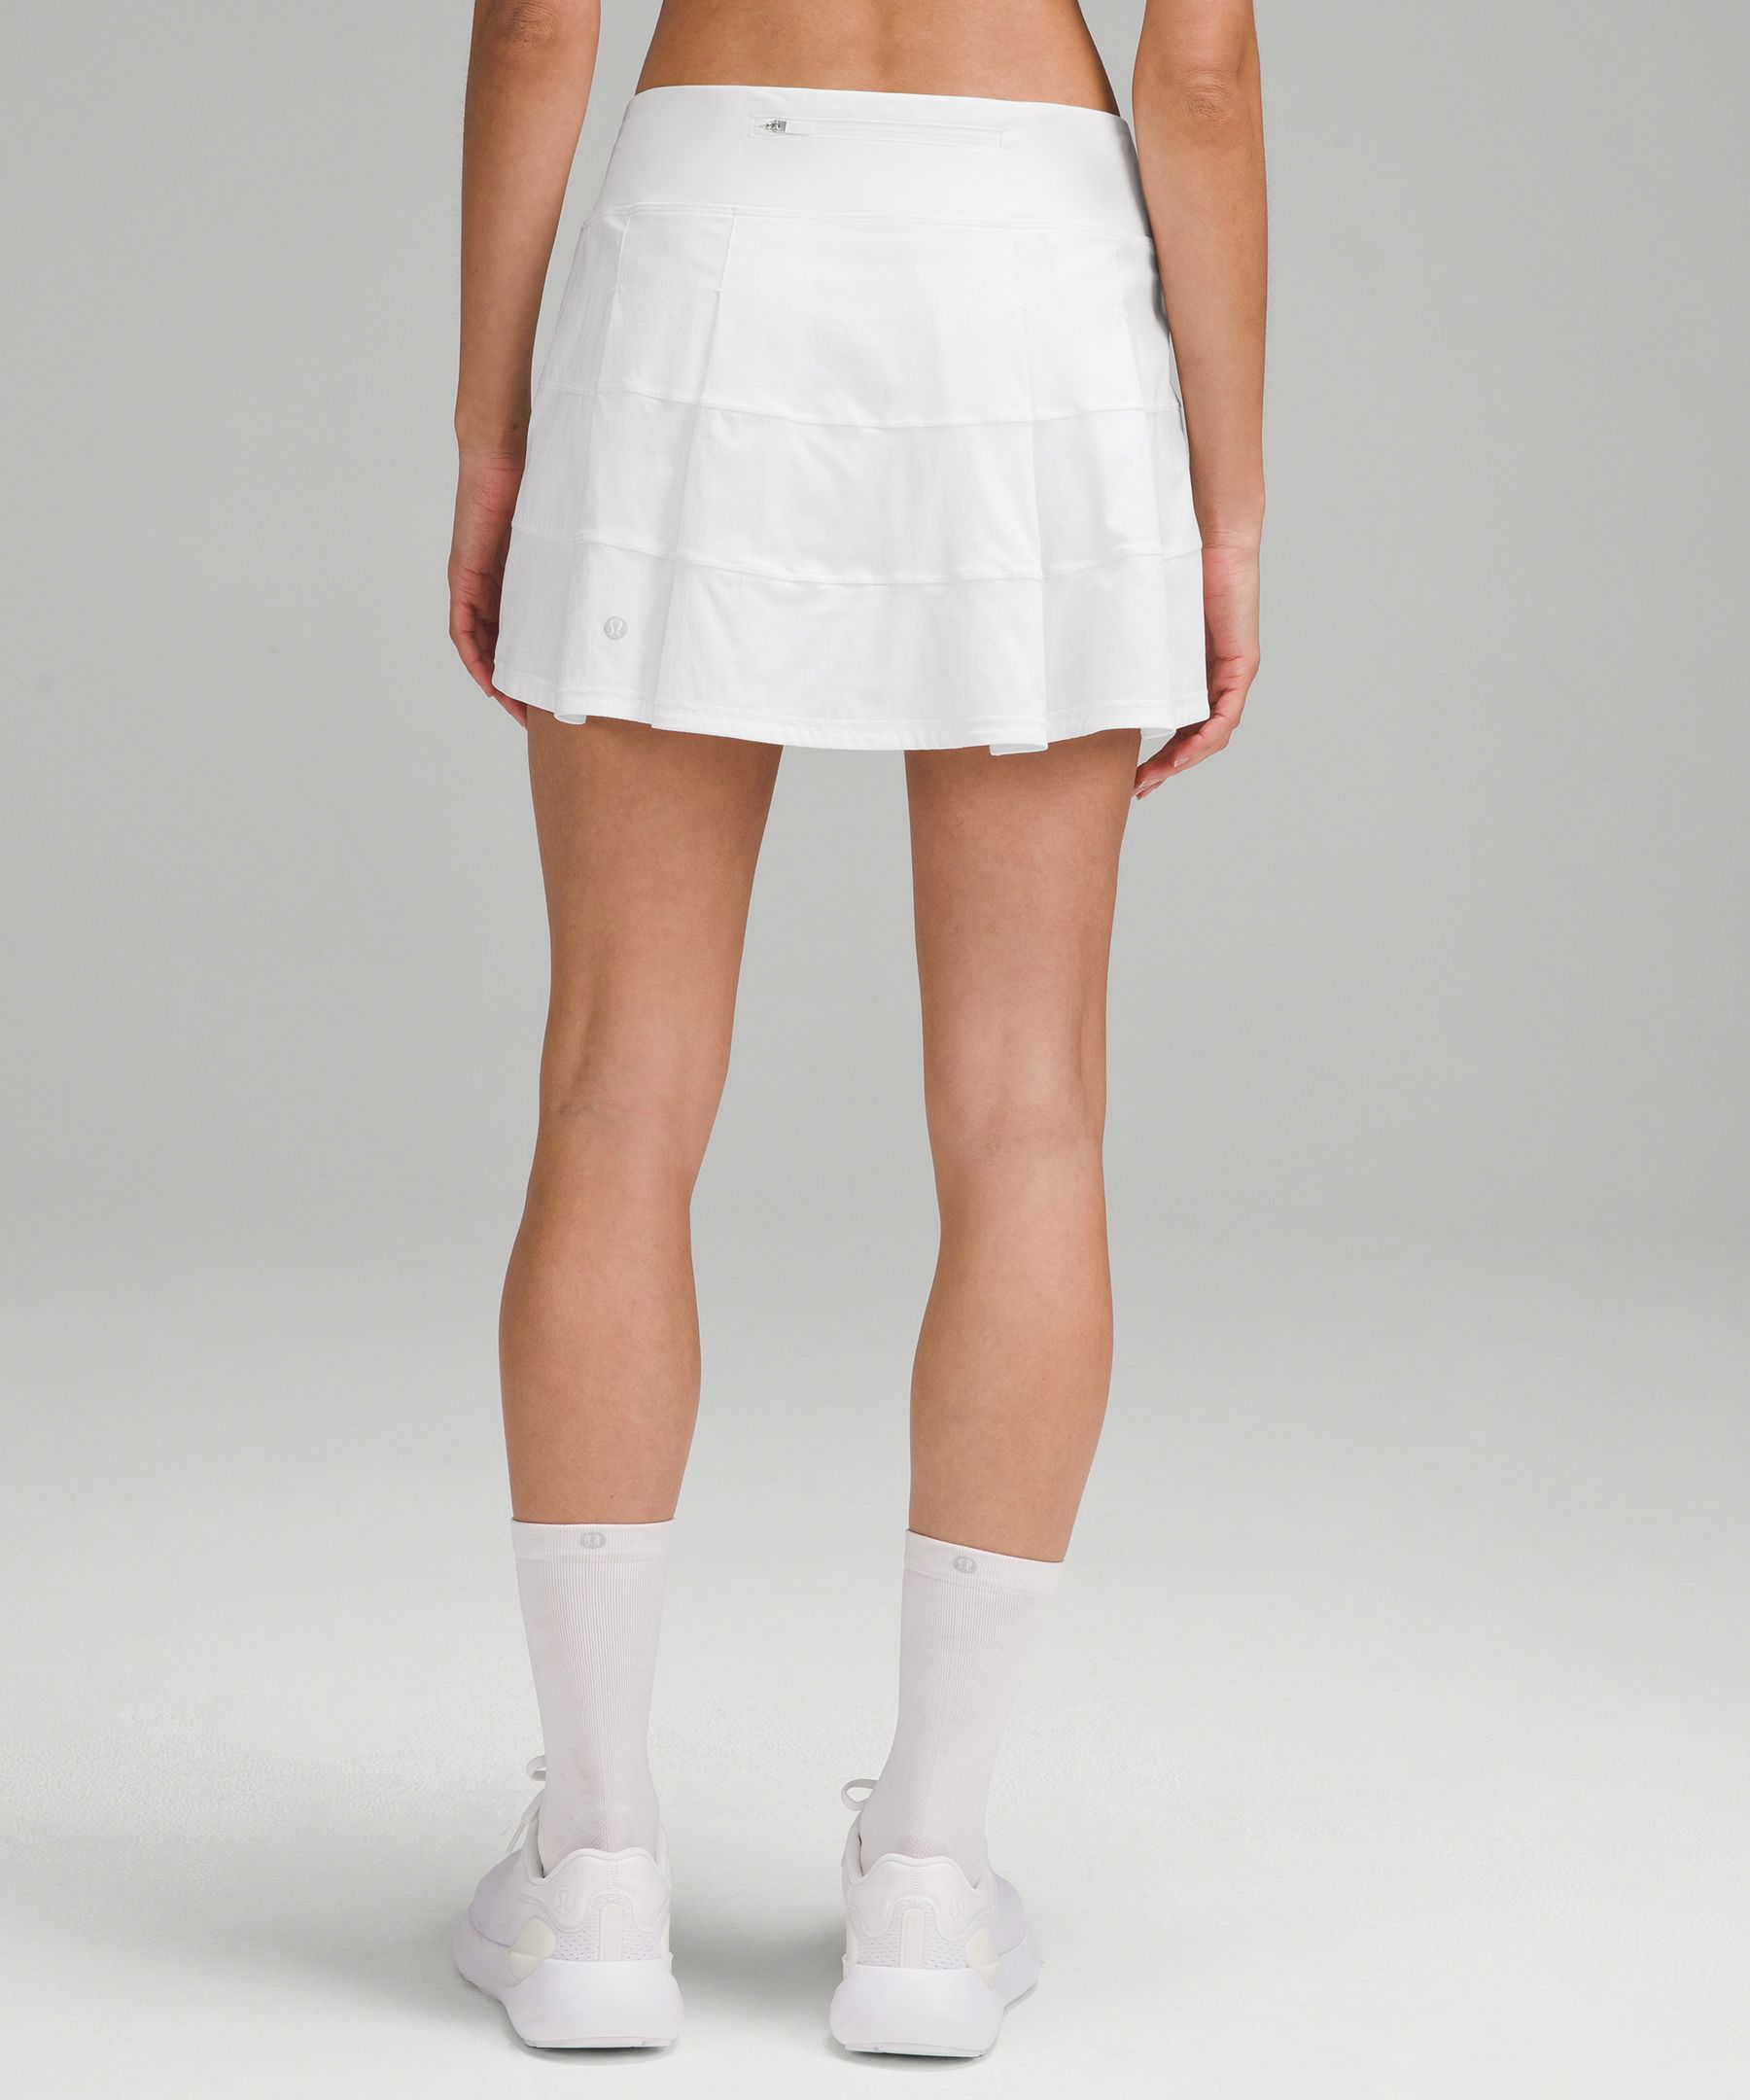 Pace Rival Mid-Rise Skirt *Long | Women's Skirts | lululemon